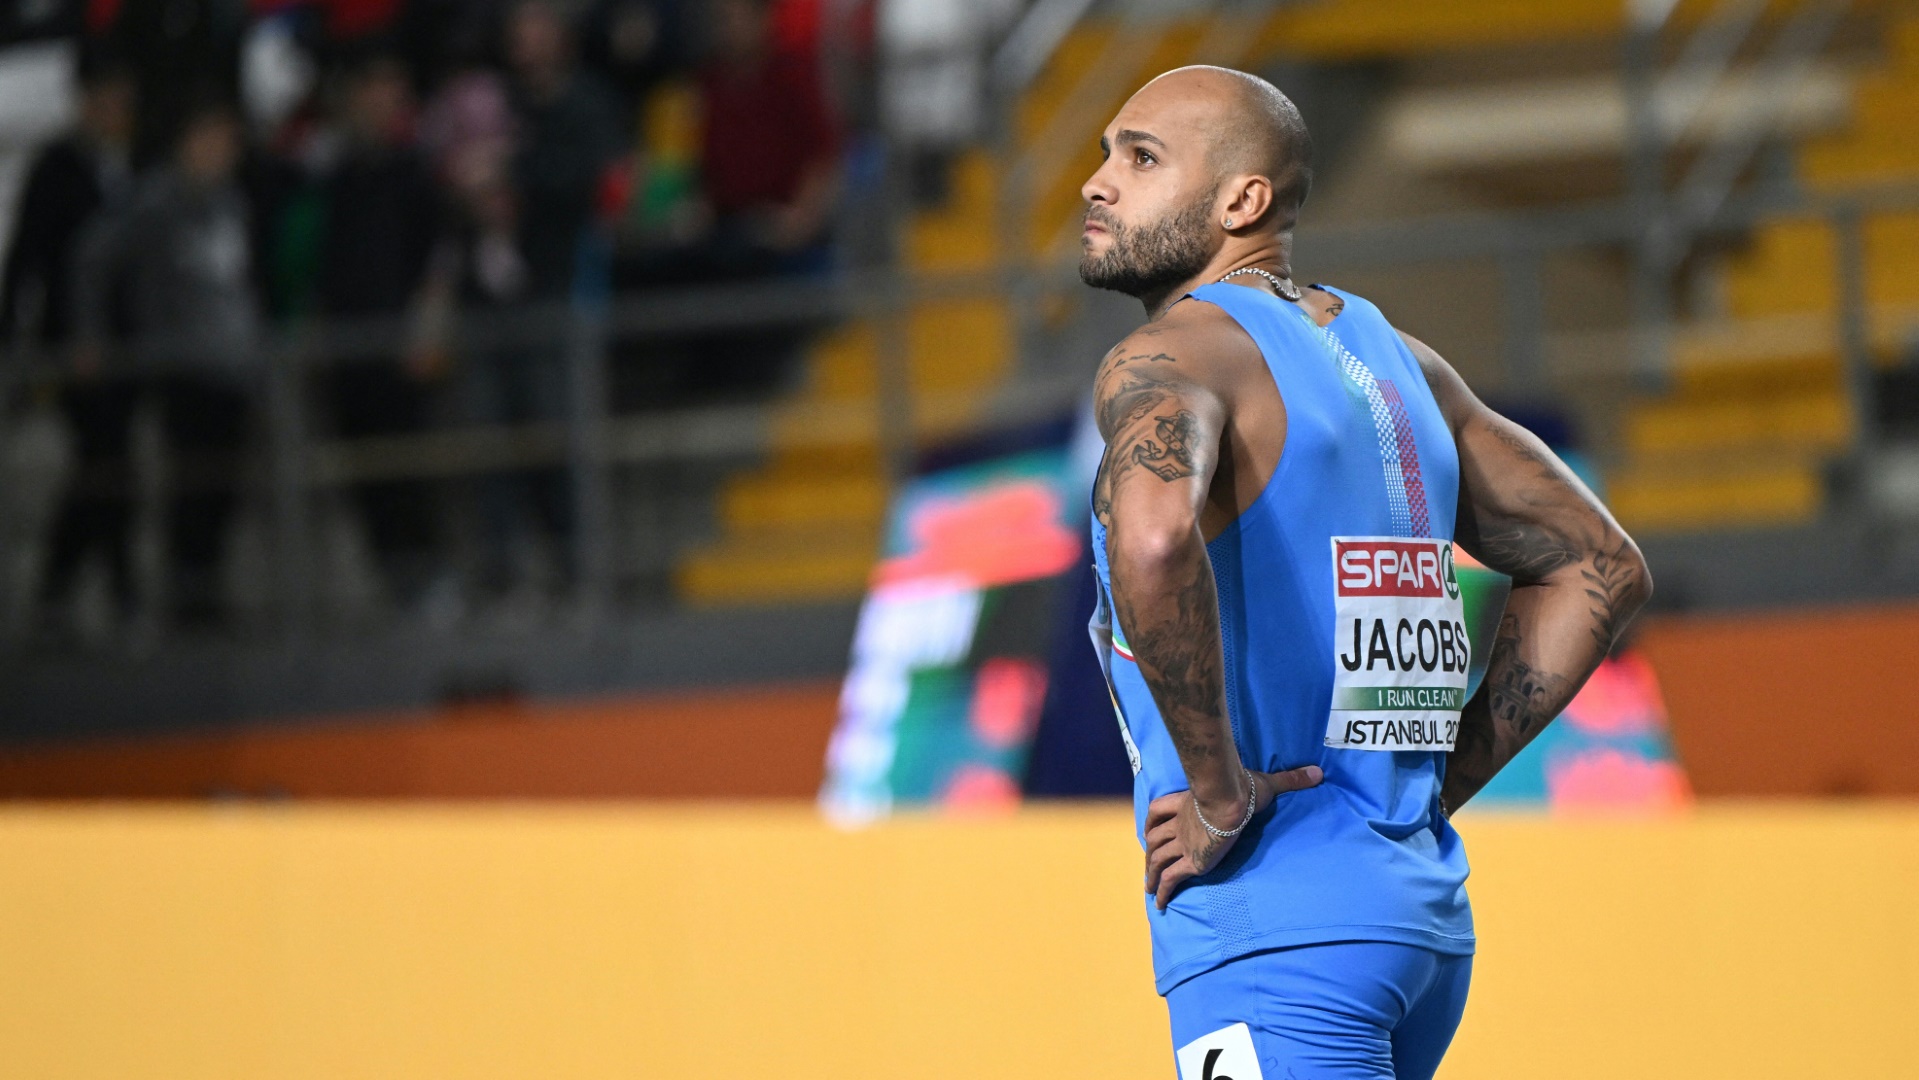 Olympiasieger Jacobs plagen Rückenbeschwerden